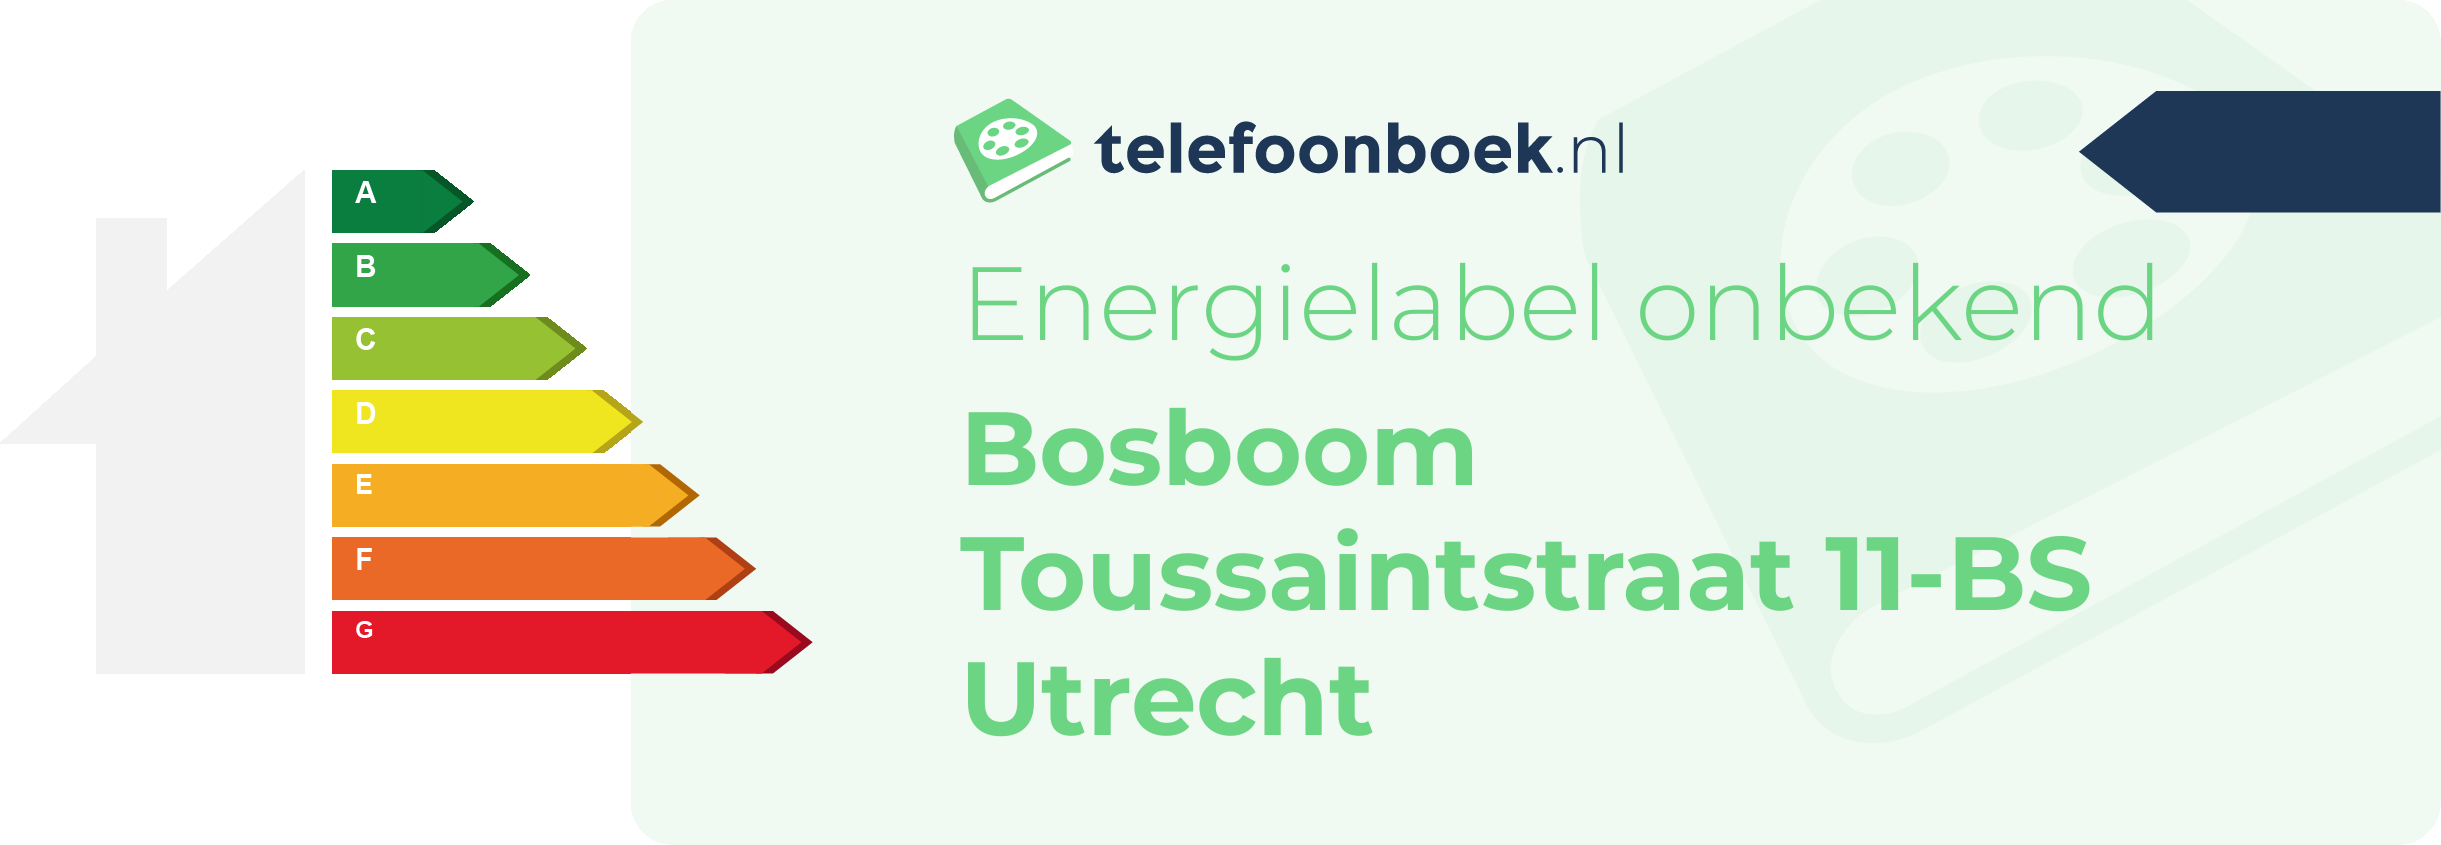 Energielabel Bosboom Toussaintstraat 11-BS Utrecht